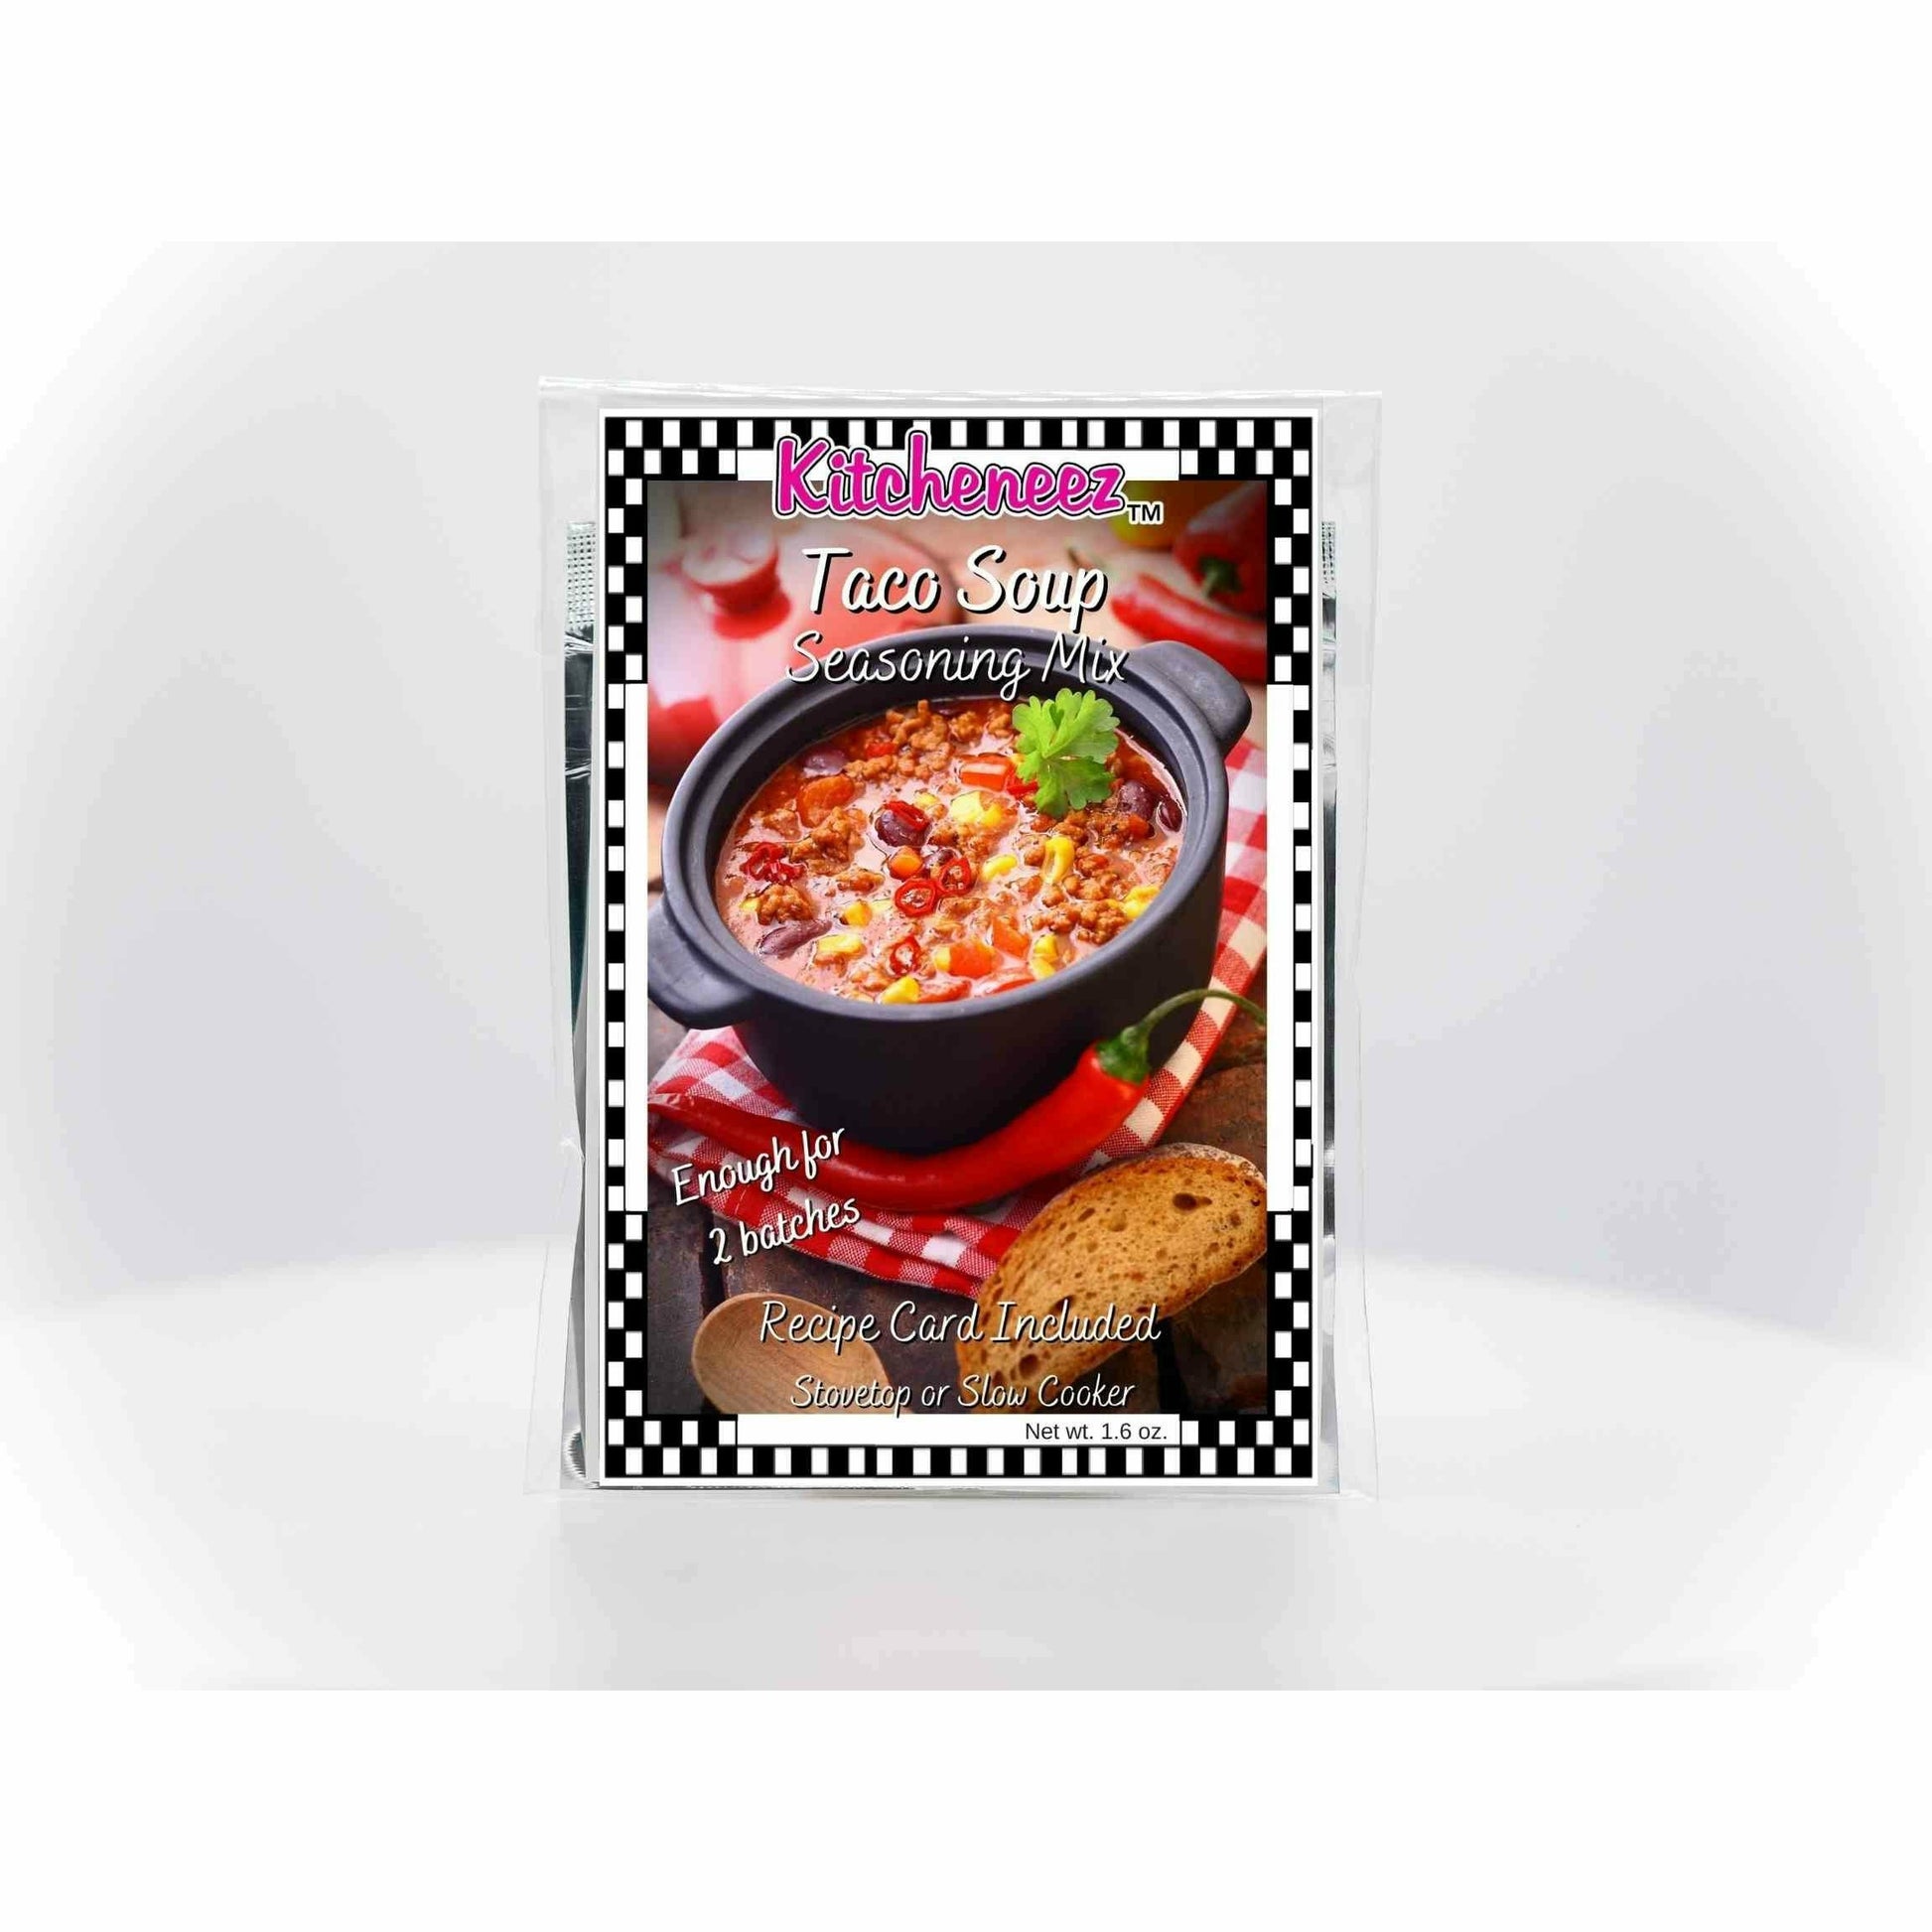 Taco Soup seasoning mix - Kitcheneez Mixes & More!